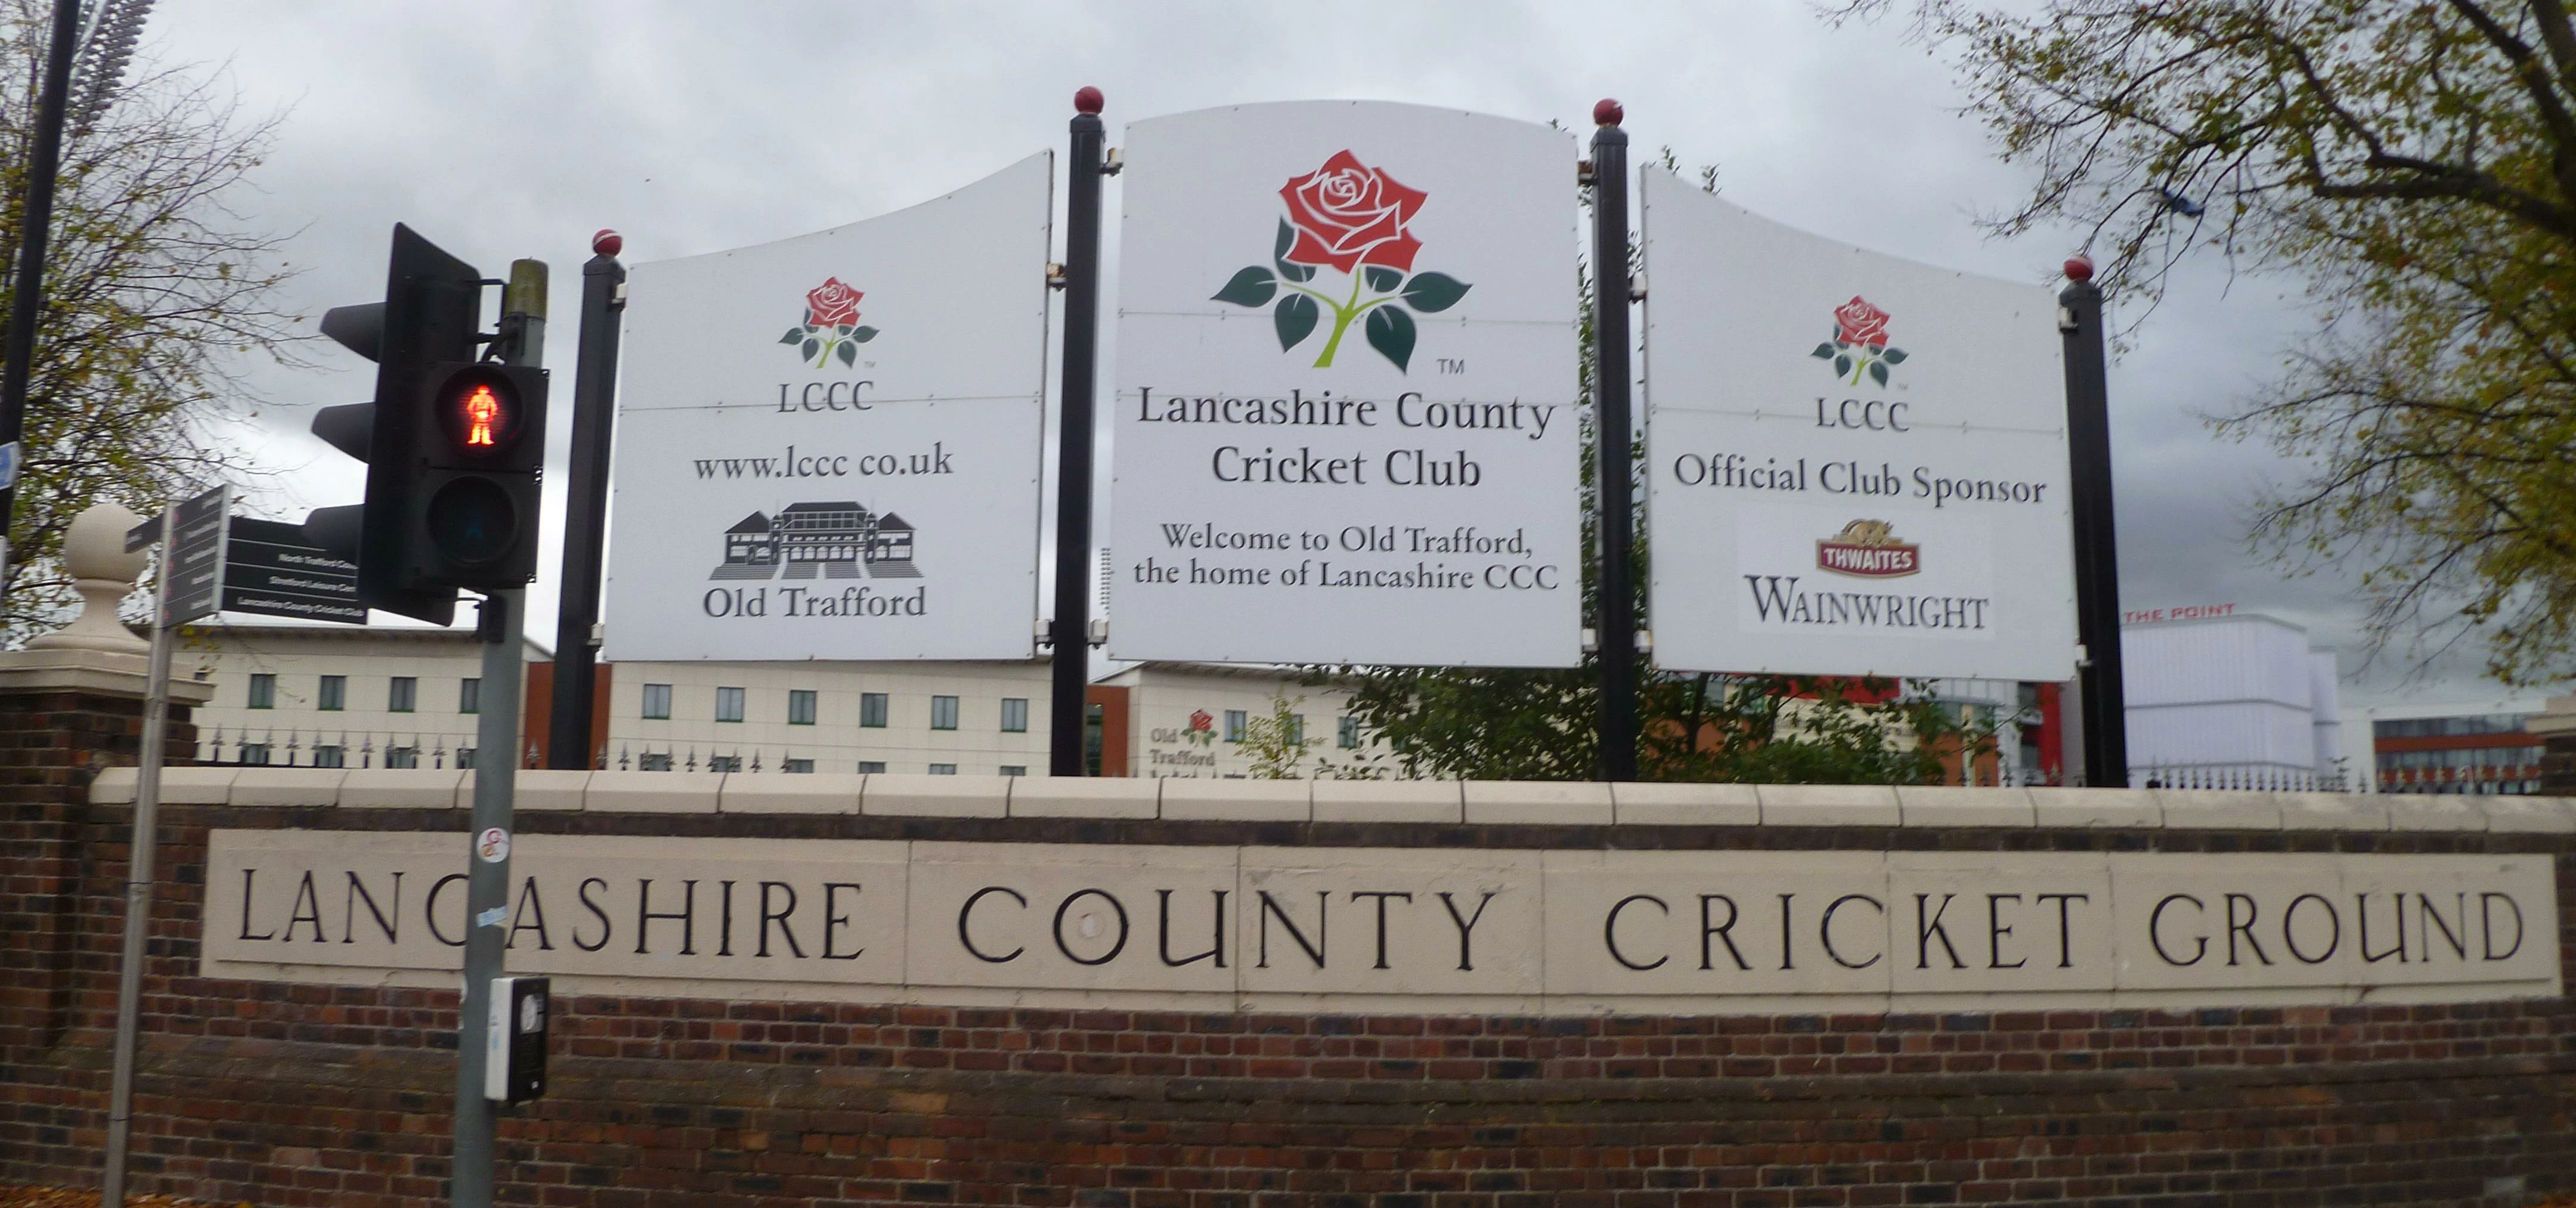 Old Trafford, Lancashire Cricket Club